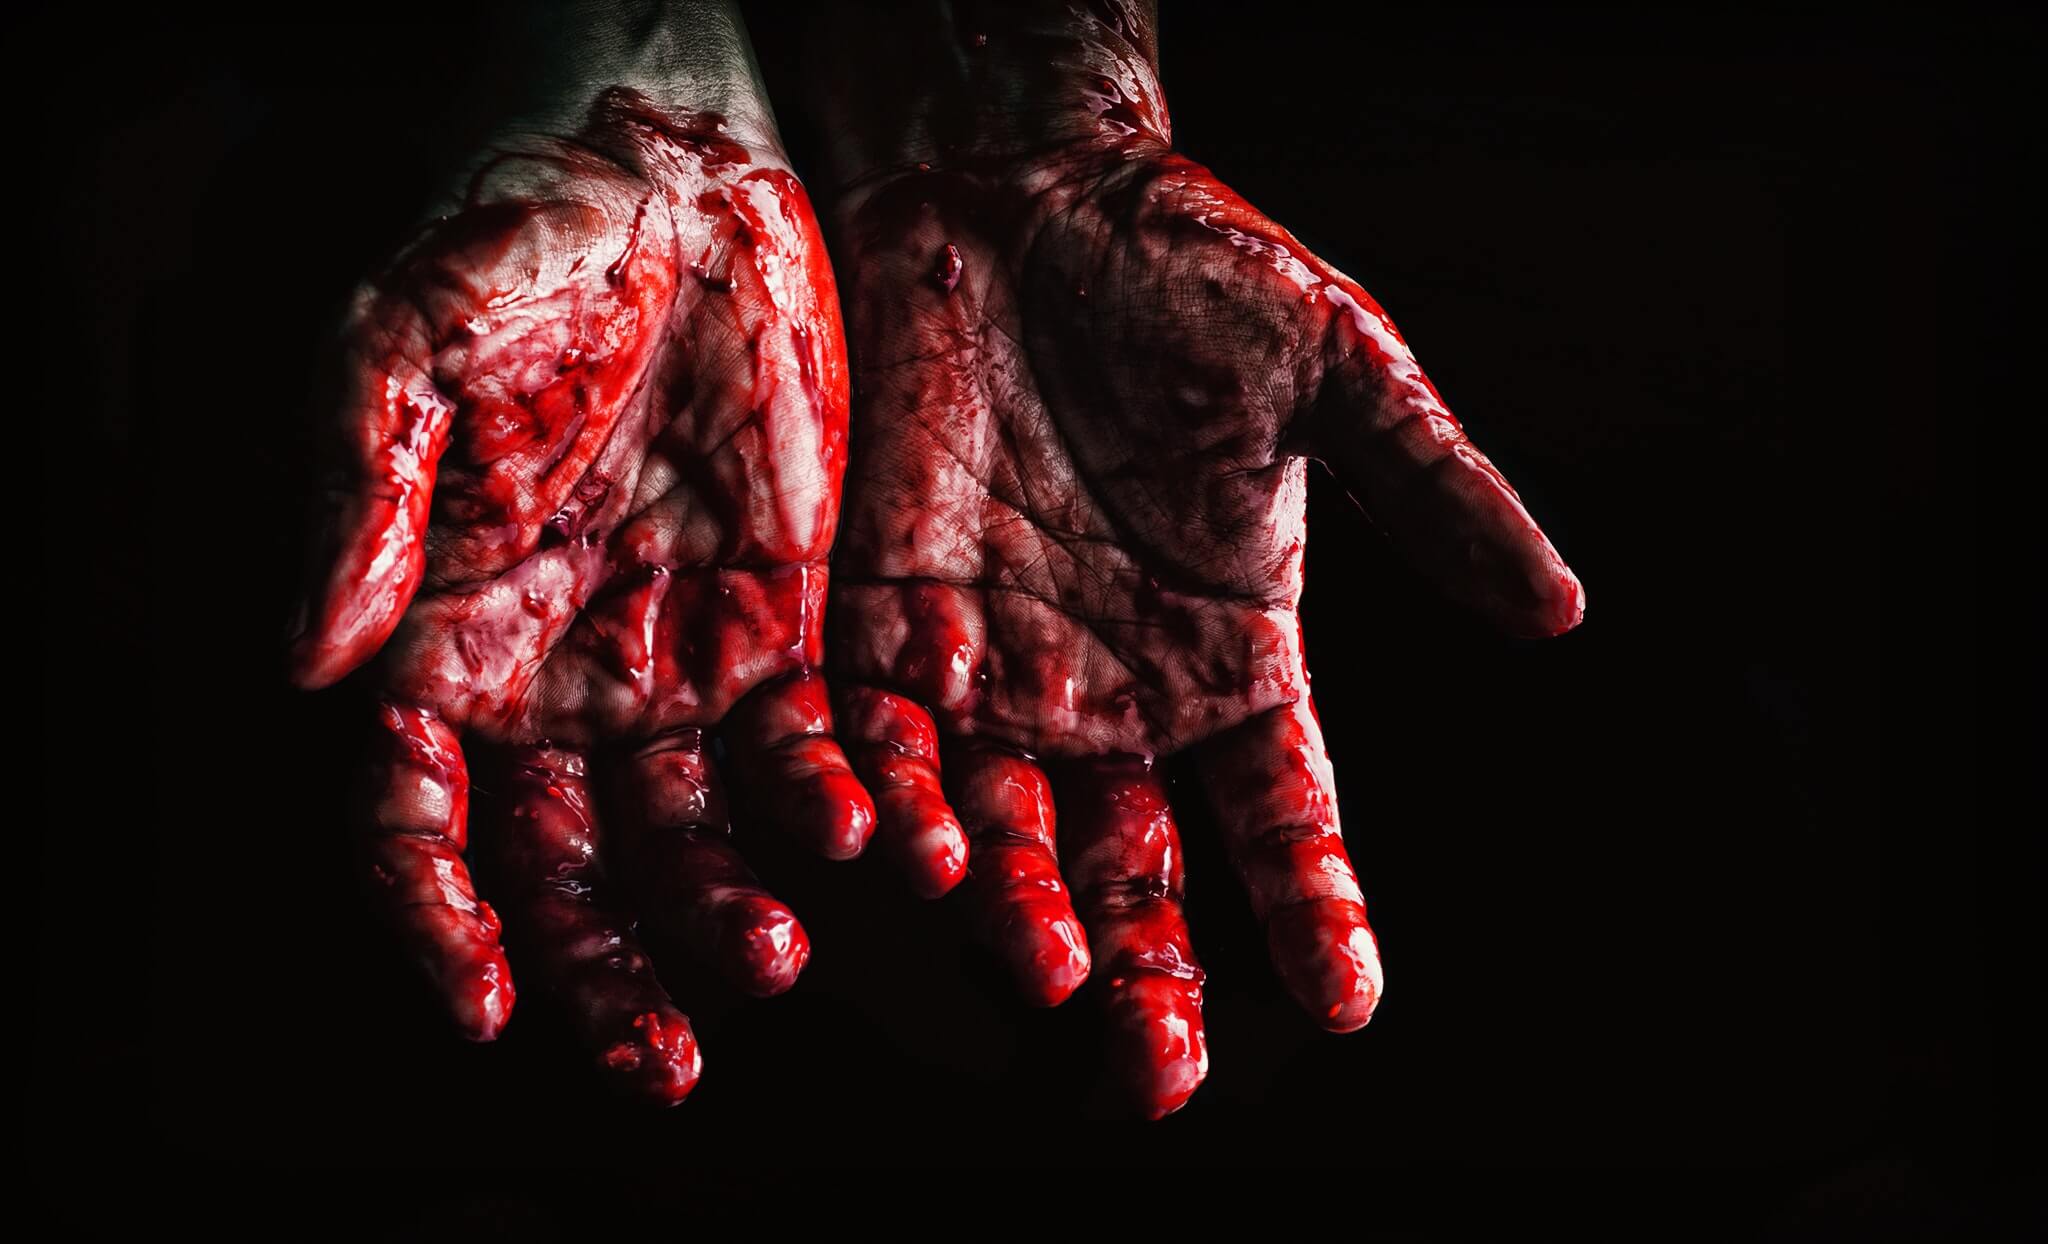 bebloede handen die zogenaamd van een seriemoordenaar zijn nadat hij een moord heeft gepleegd